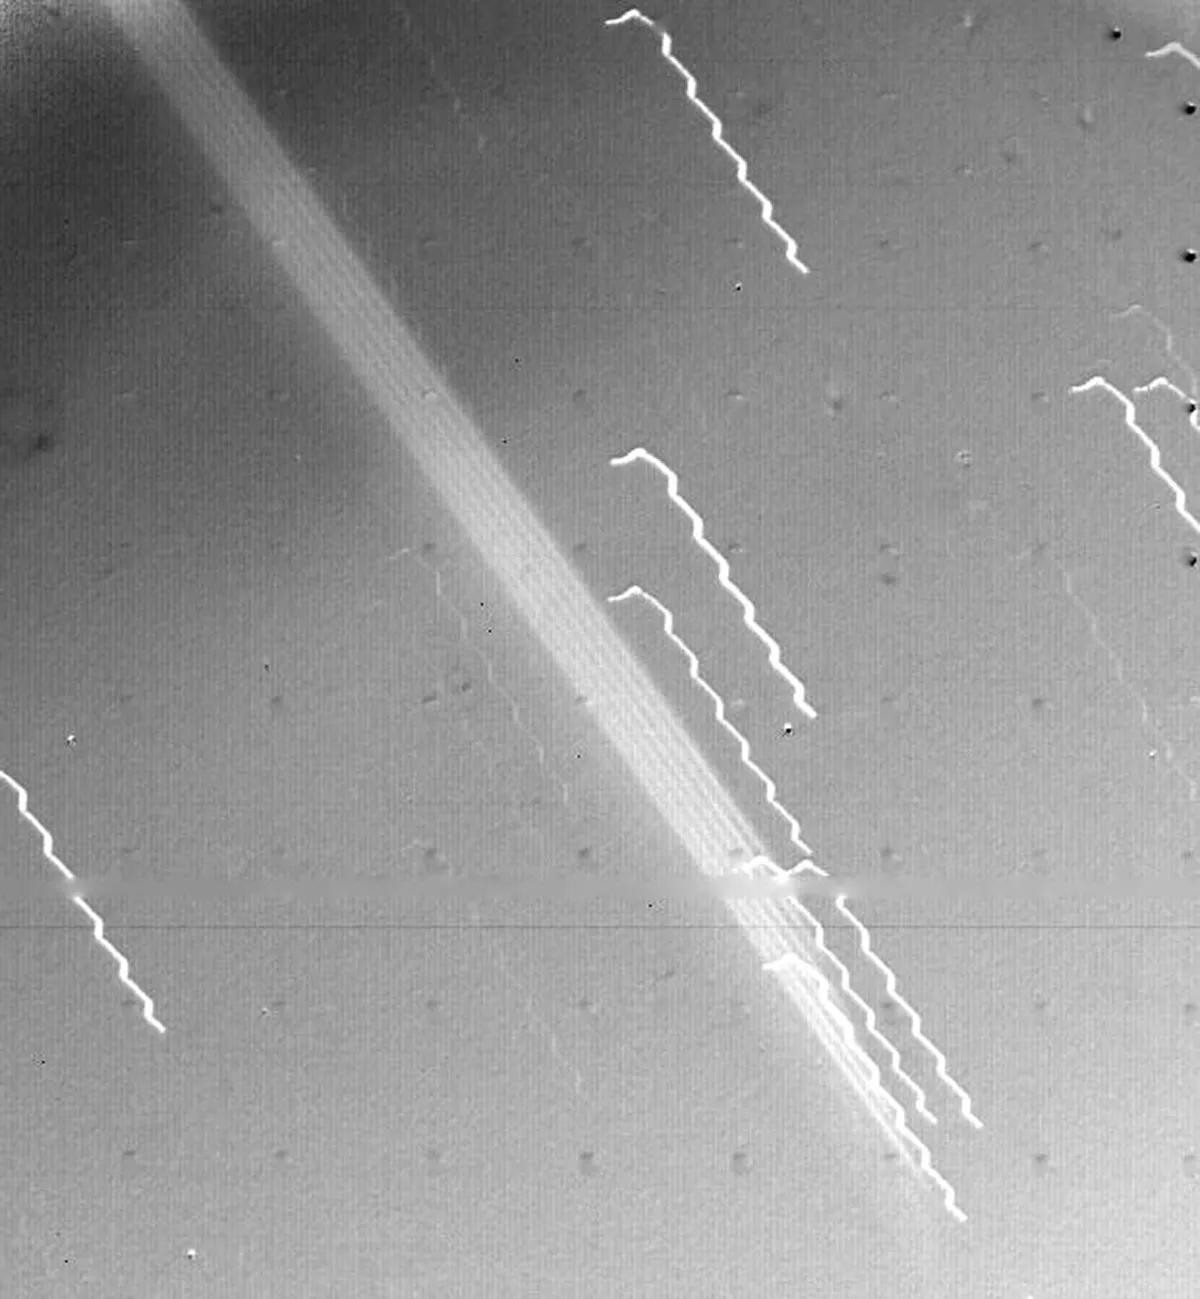 La amplia banda de luz que cruza diagonalmente a lo largo del centro de esta imagen es la primera evidencia de los anillos de Júpiter, vistos por la nave espacial Voyager 1 el 4 de marzo de 1979. El borde del anillo estaba a 1.212.000 km de la nave espacial y a 57.000 km de la Nube visible desde la superficie de Júpiter.  Las líneas oscilantes son estrellas de fondo, cuyo aspecto se ve afectado por el movimiento de la nave espacial.  Crédito: NASA/JPL